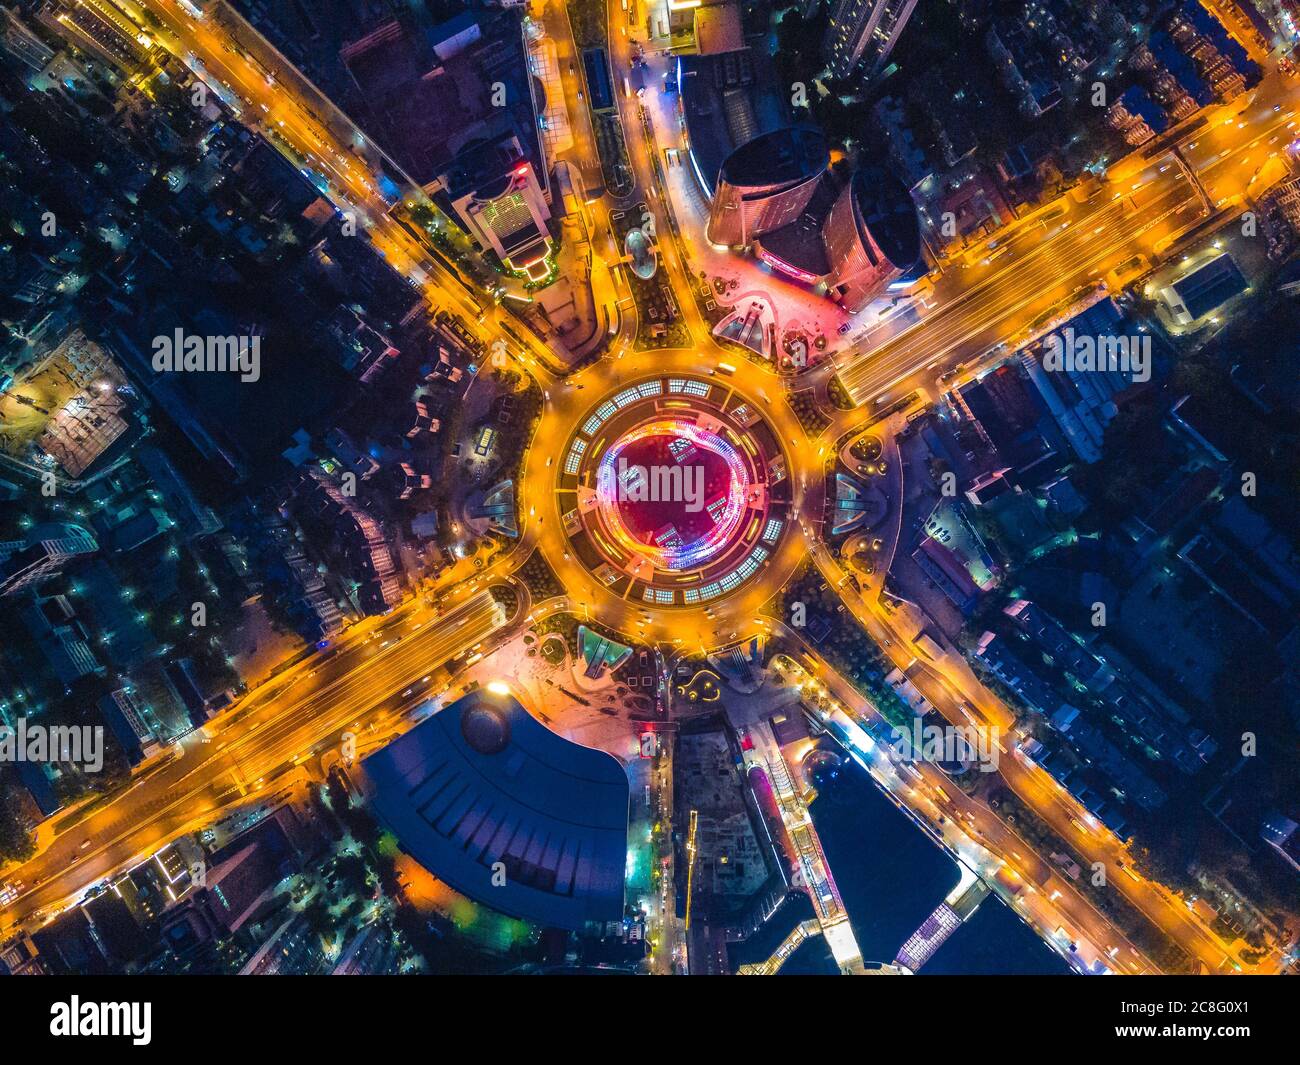 Paysage urbain de Optics Valley, Wuhan.Wuhan la nuit.vue panoramique et bâtiments dans le quartier financier. Banque D'Images